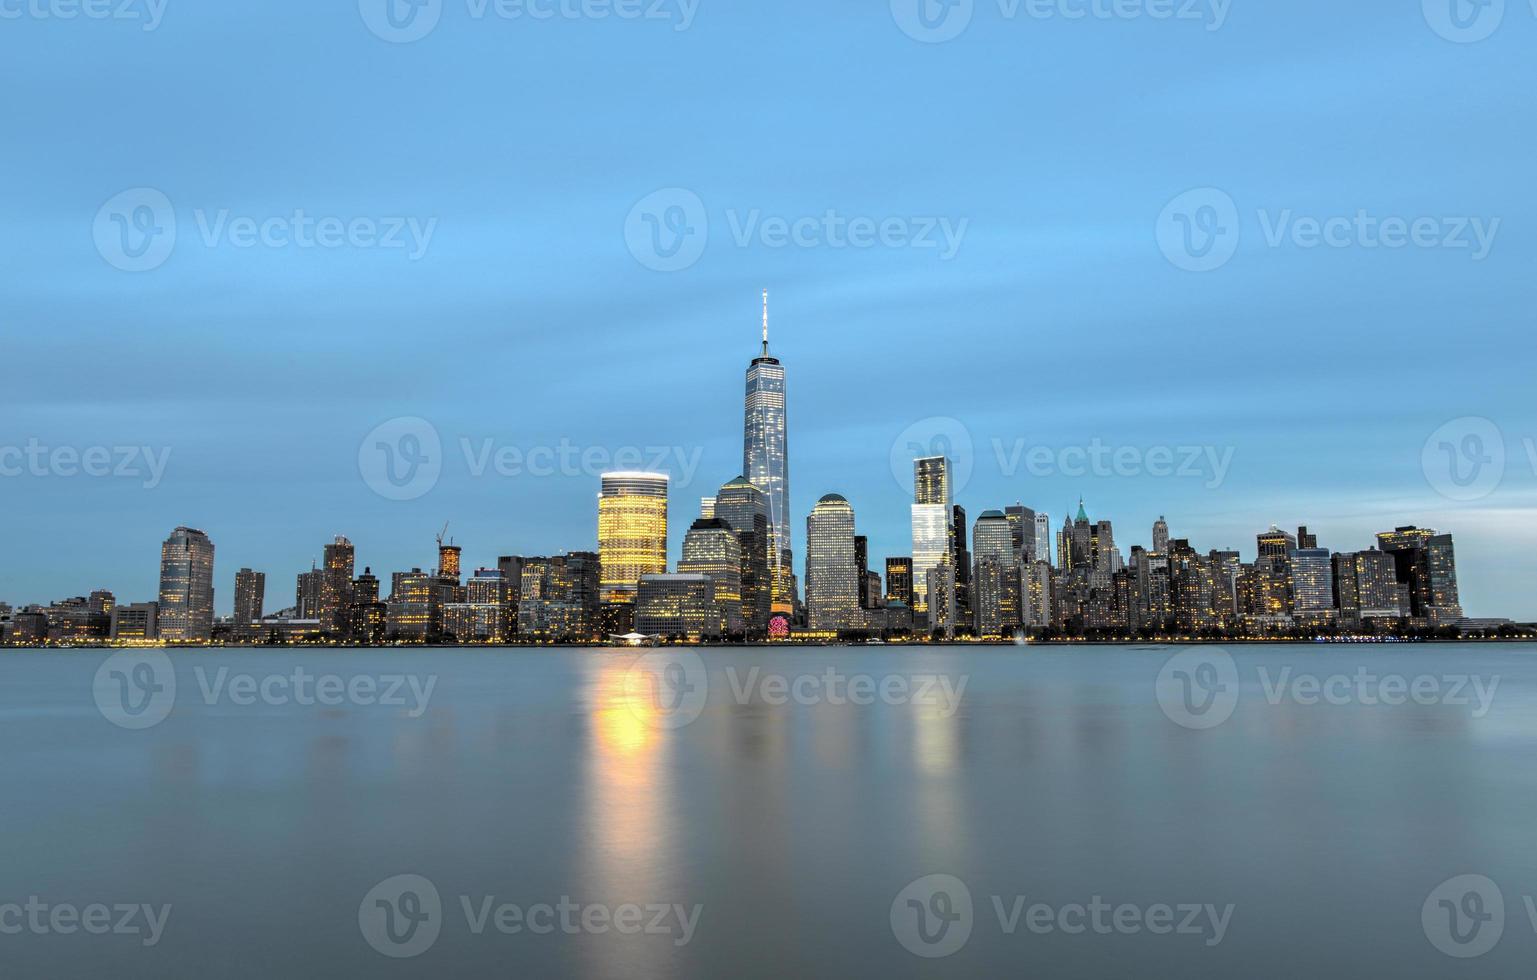 horizonte de la ciudad de nueva york desde nueva jersey foto